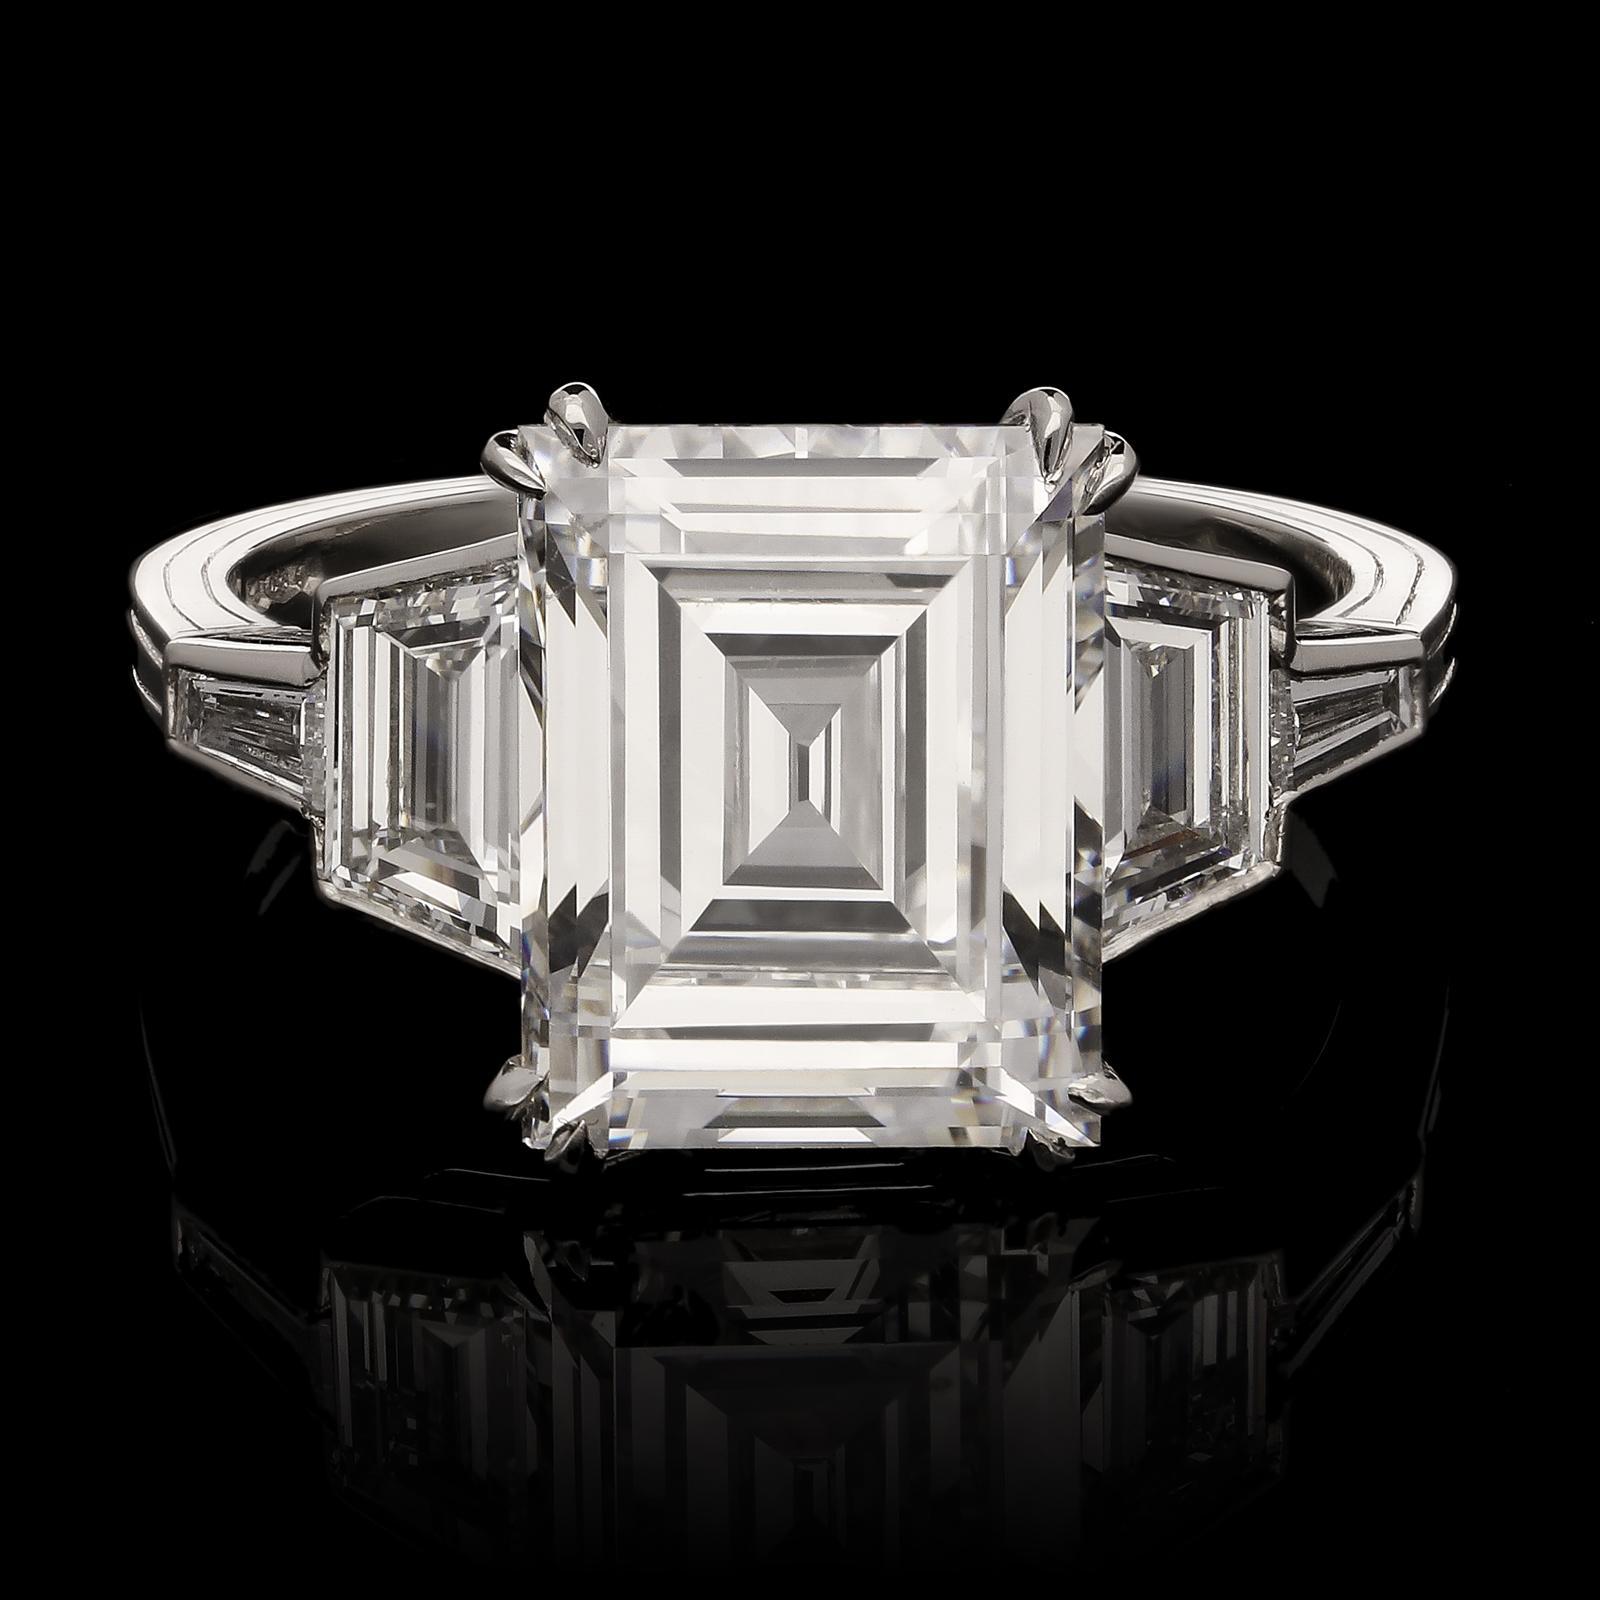 Ein atemberaubender Diamantring im Carré-Schliff von Hancocks, in dessen Zentrum ein Carré-Diamant im Vintage-Schliff mit einem Gewicht von 4,09 ct. und einer Farbe von F und einer Reinheit von VS1 steht, der in einer Platinfassung zwischen